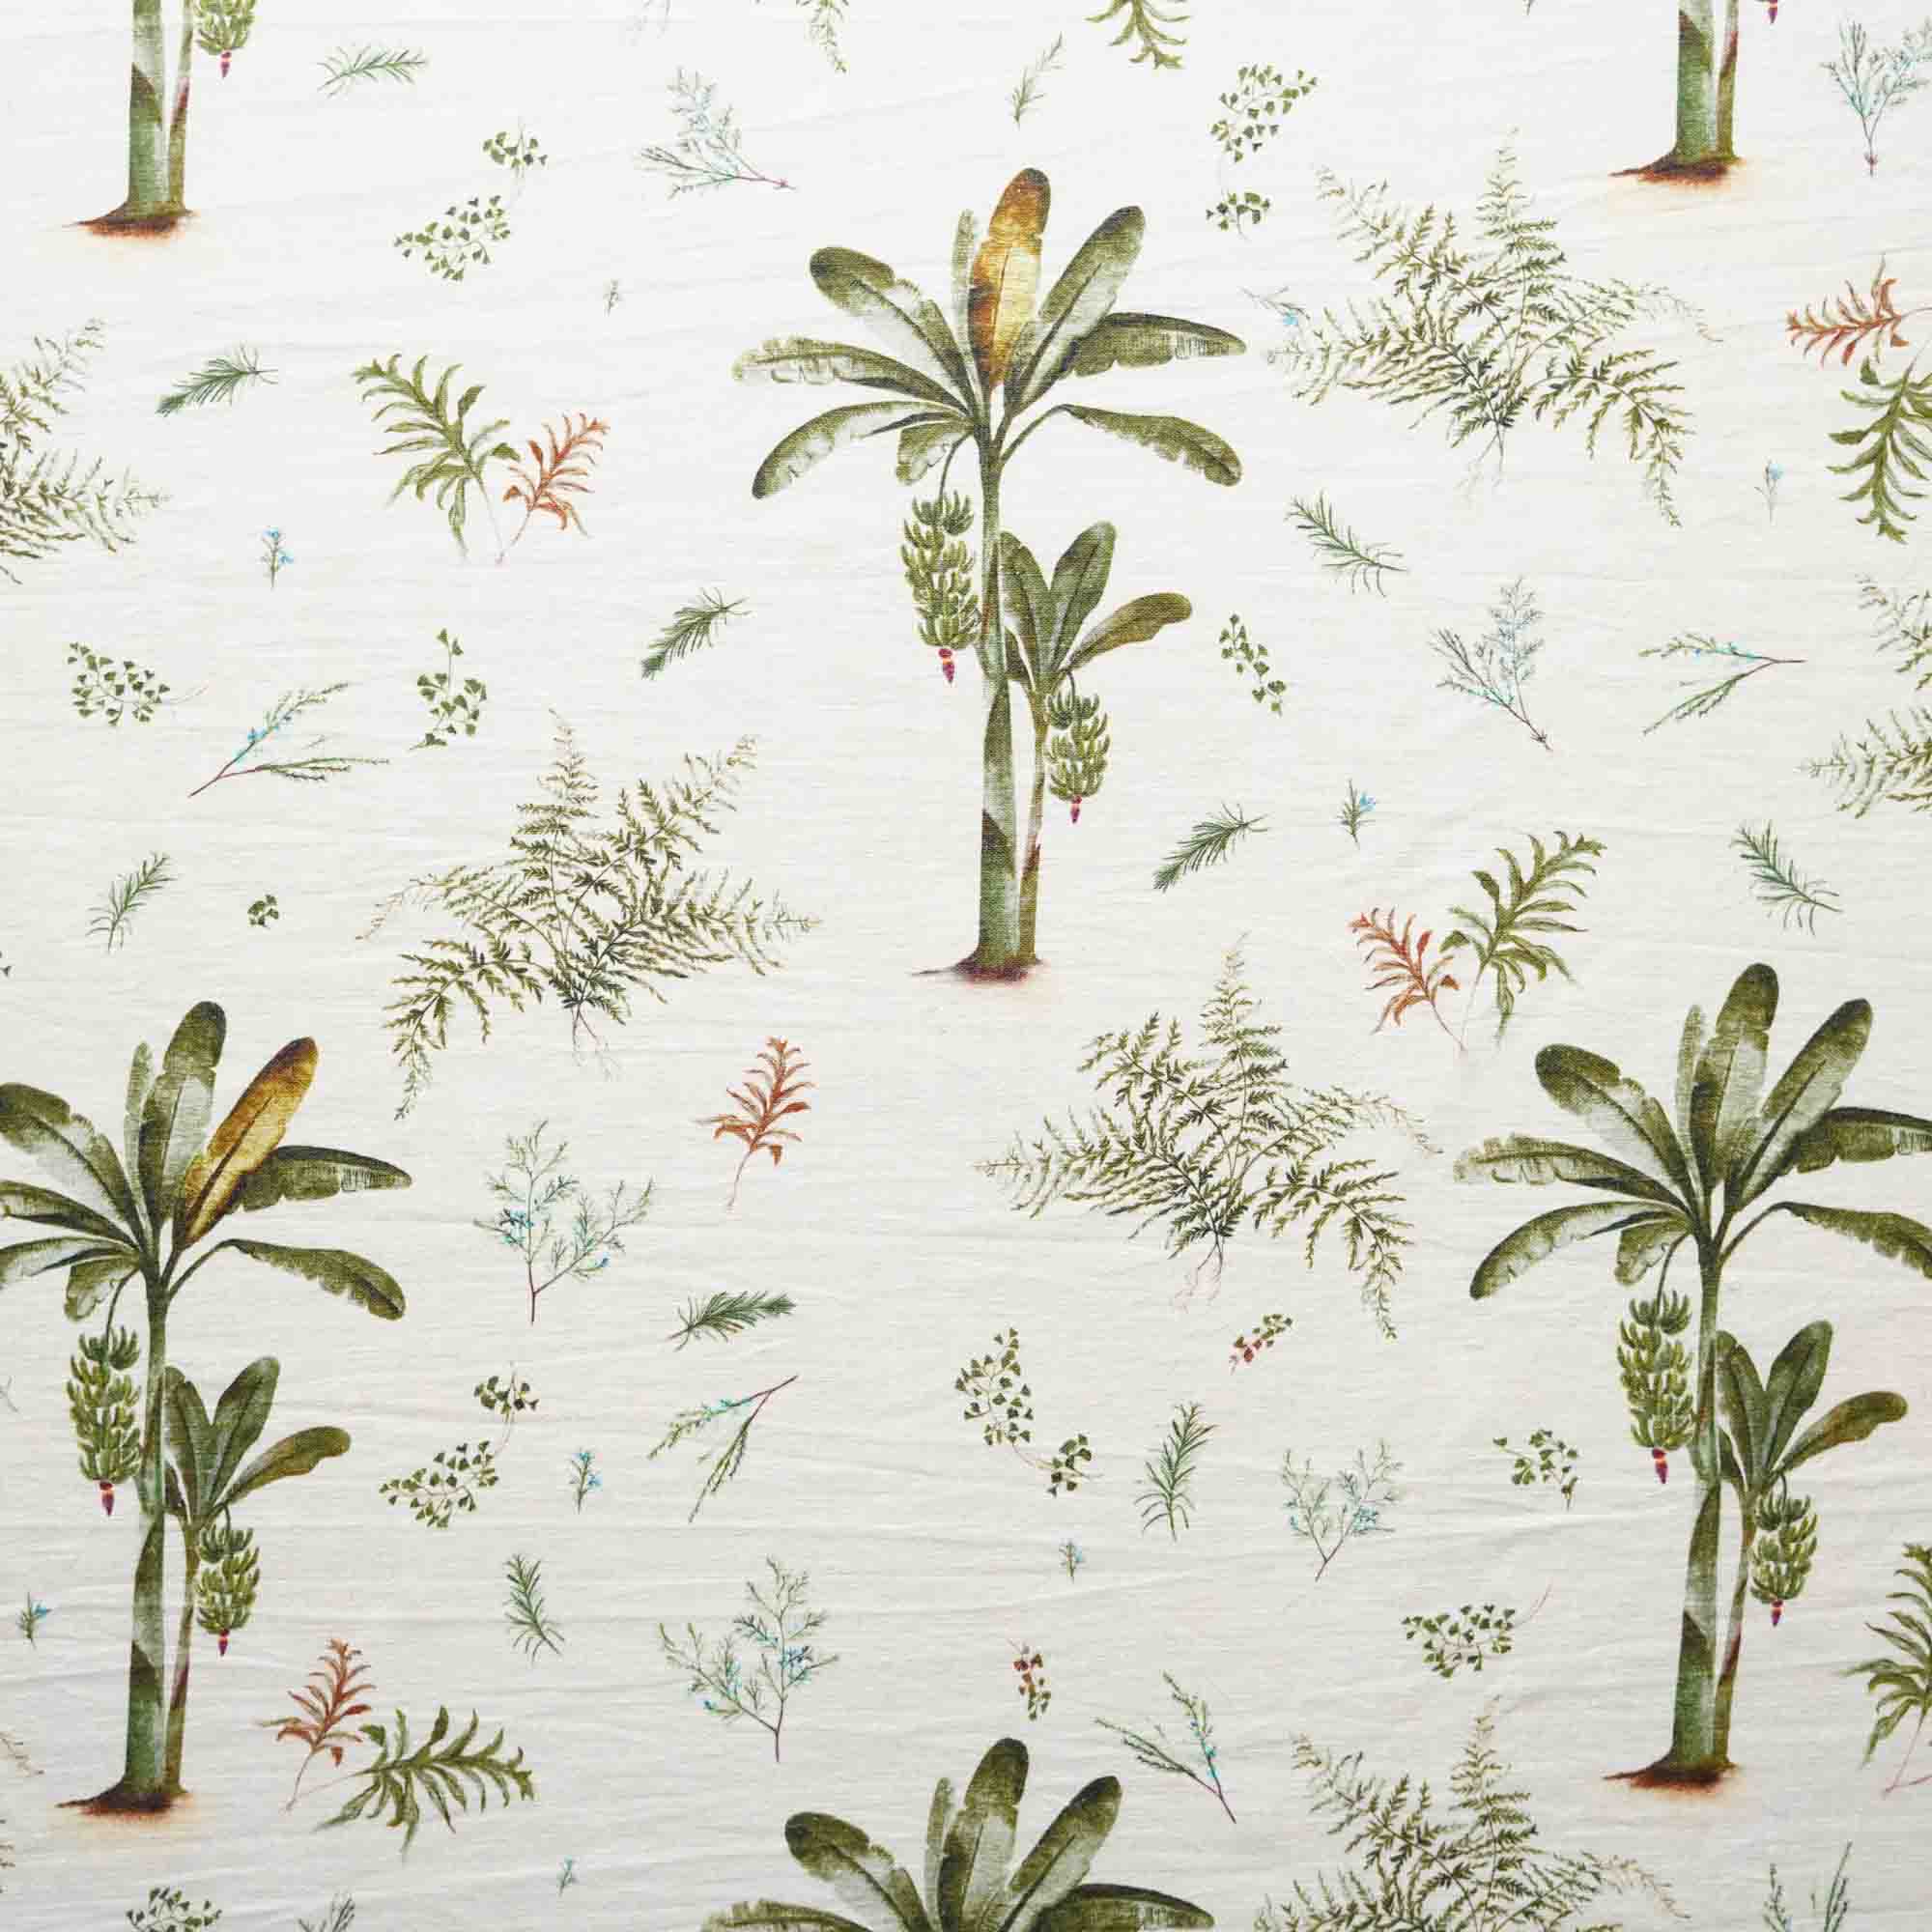 100% Linen Banana Tree Fabric (Horizontal Repeat)